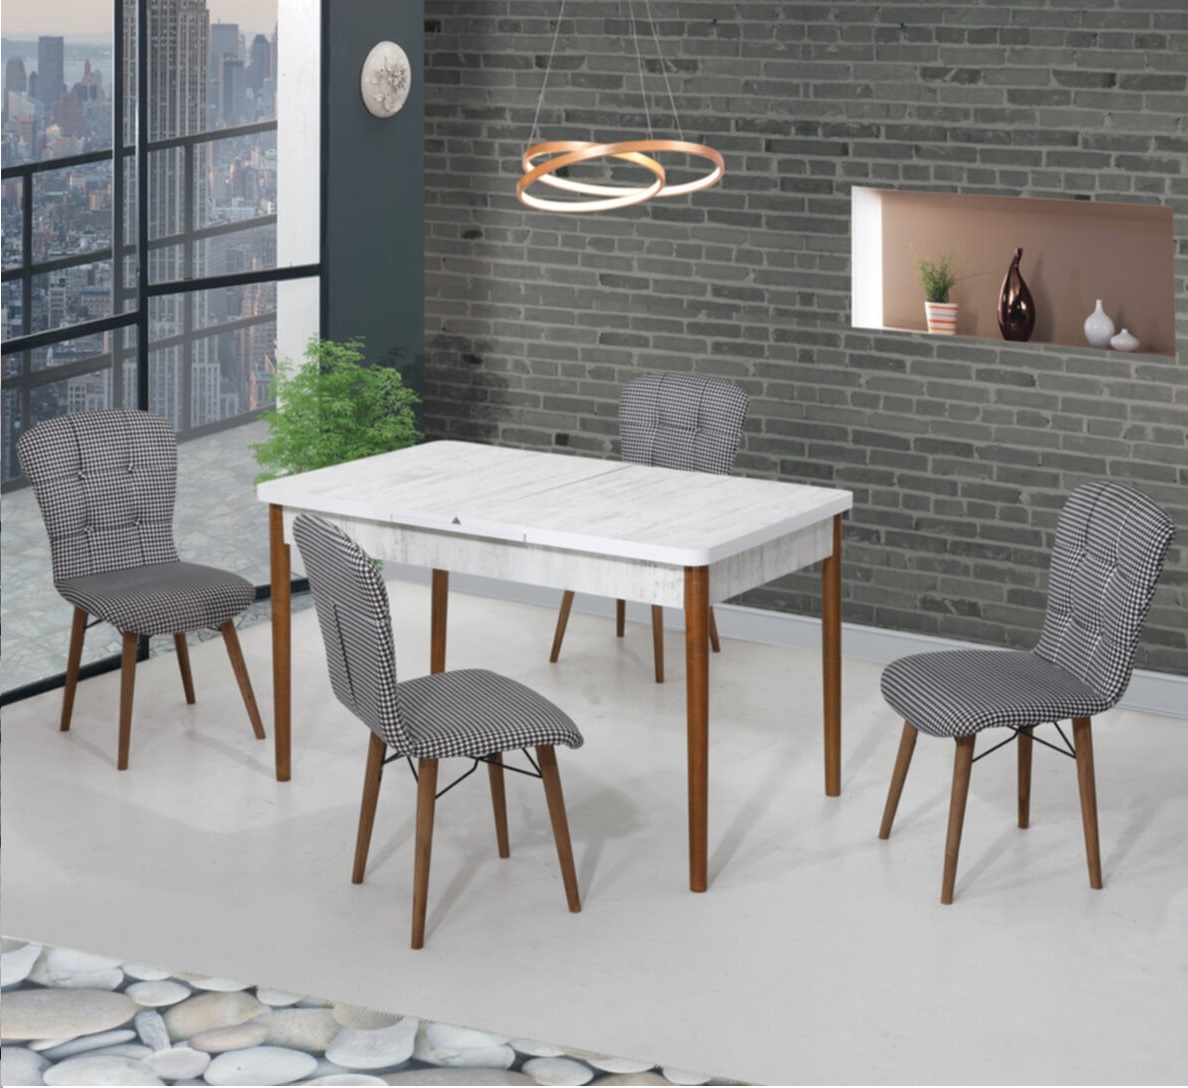 Set masa extensibila cu 6 scaune tapitate alb-negru Homs cristal 170 x 80 cm